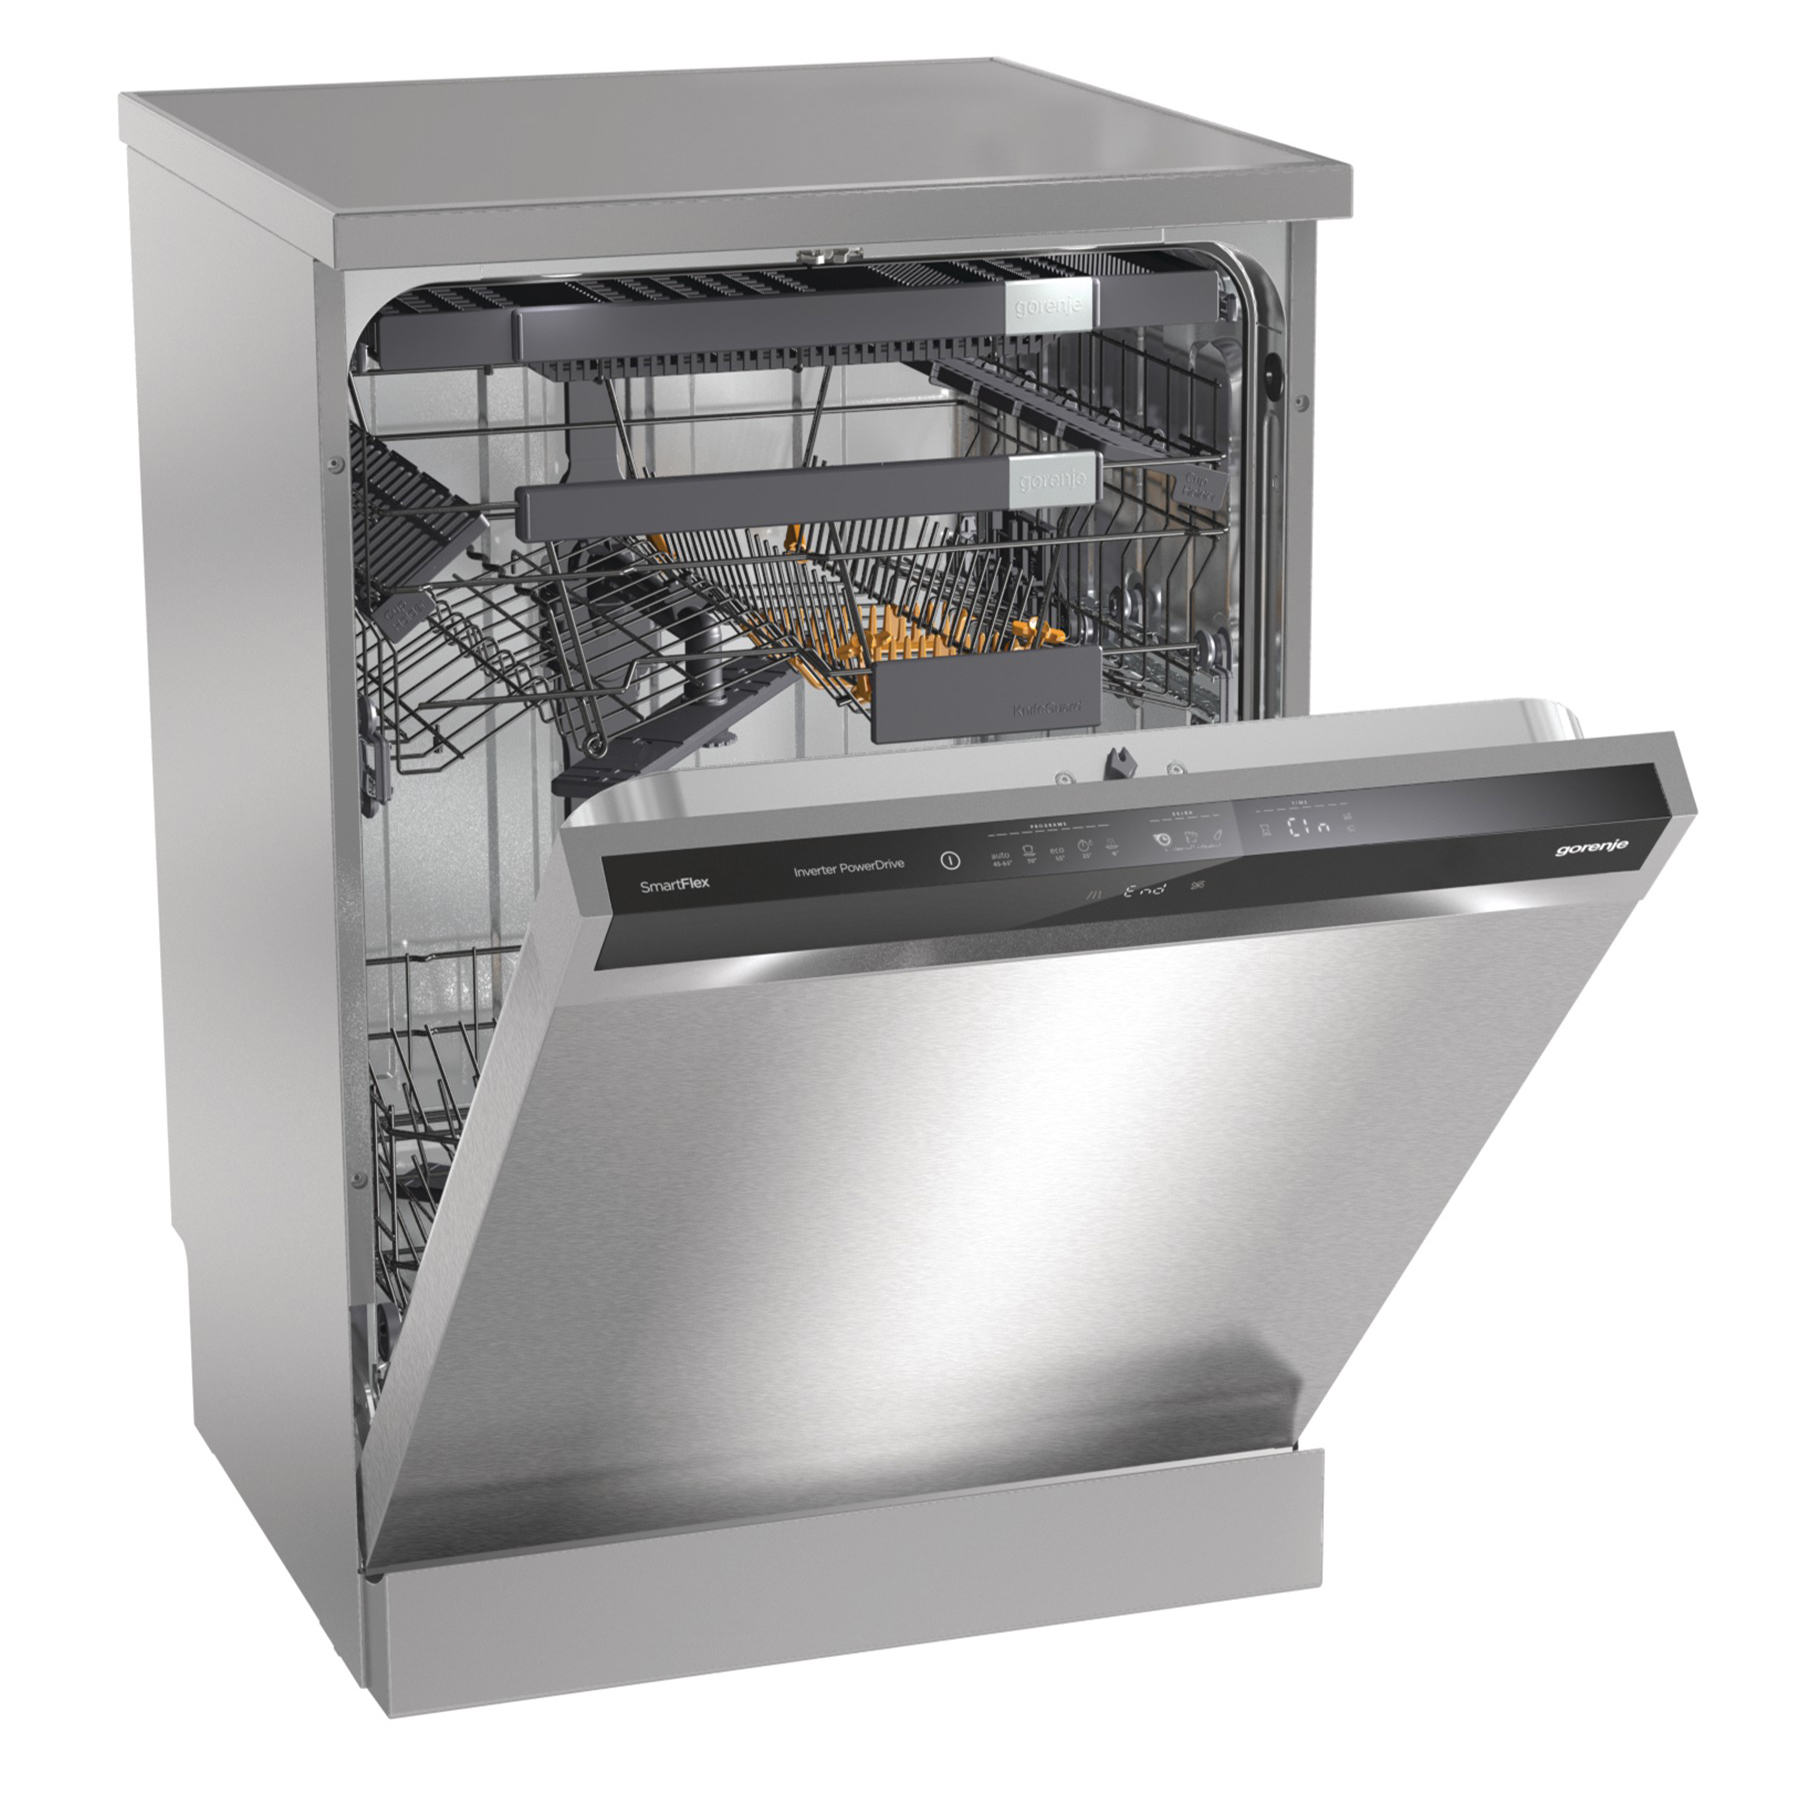 Посудомоечная горение отзывы. Посудомоечная машина Gorenje gs65160x. Посудомоечная машина 60 см Gorenje gs620e10s. Посудомоечная машина Gorenje gs53110w. Посудомойка Gorenje встраиваемая.